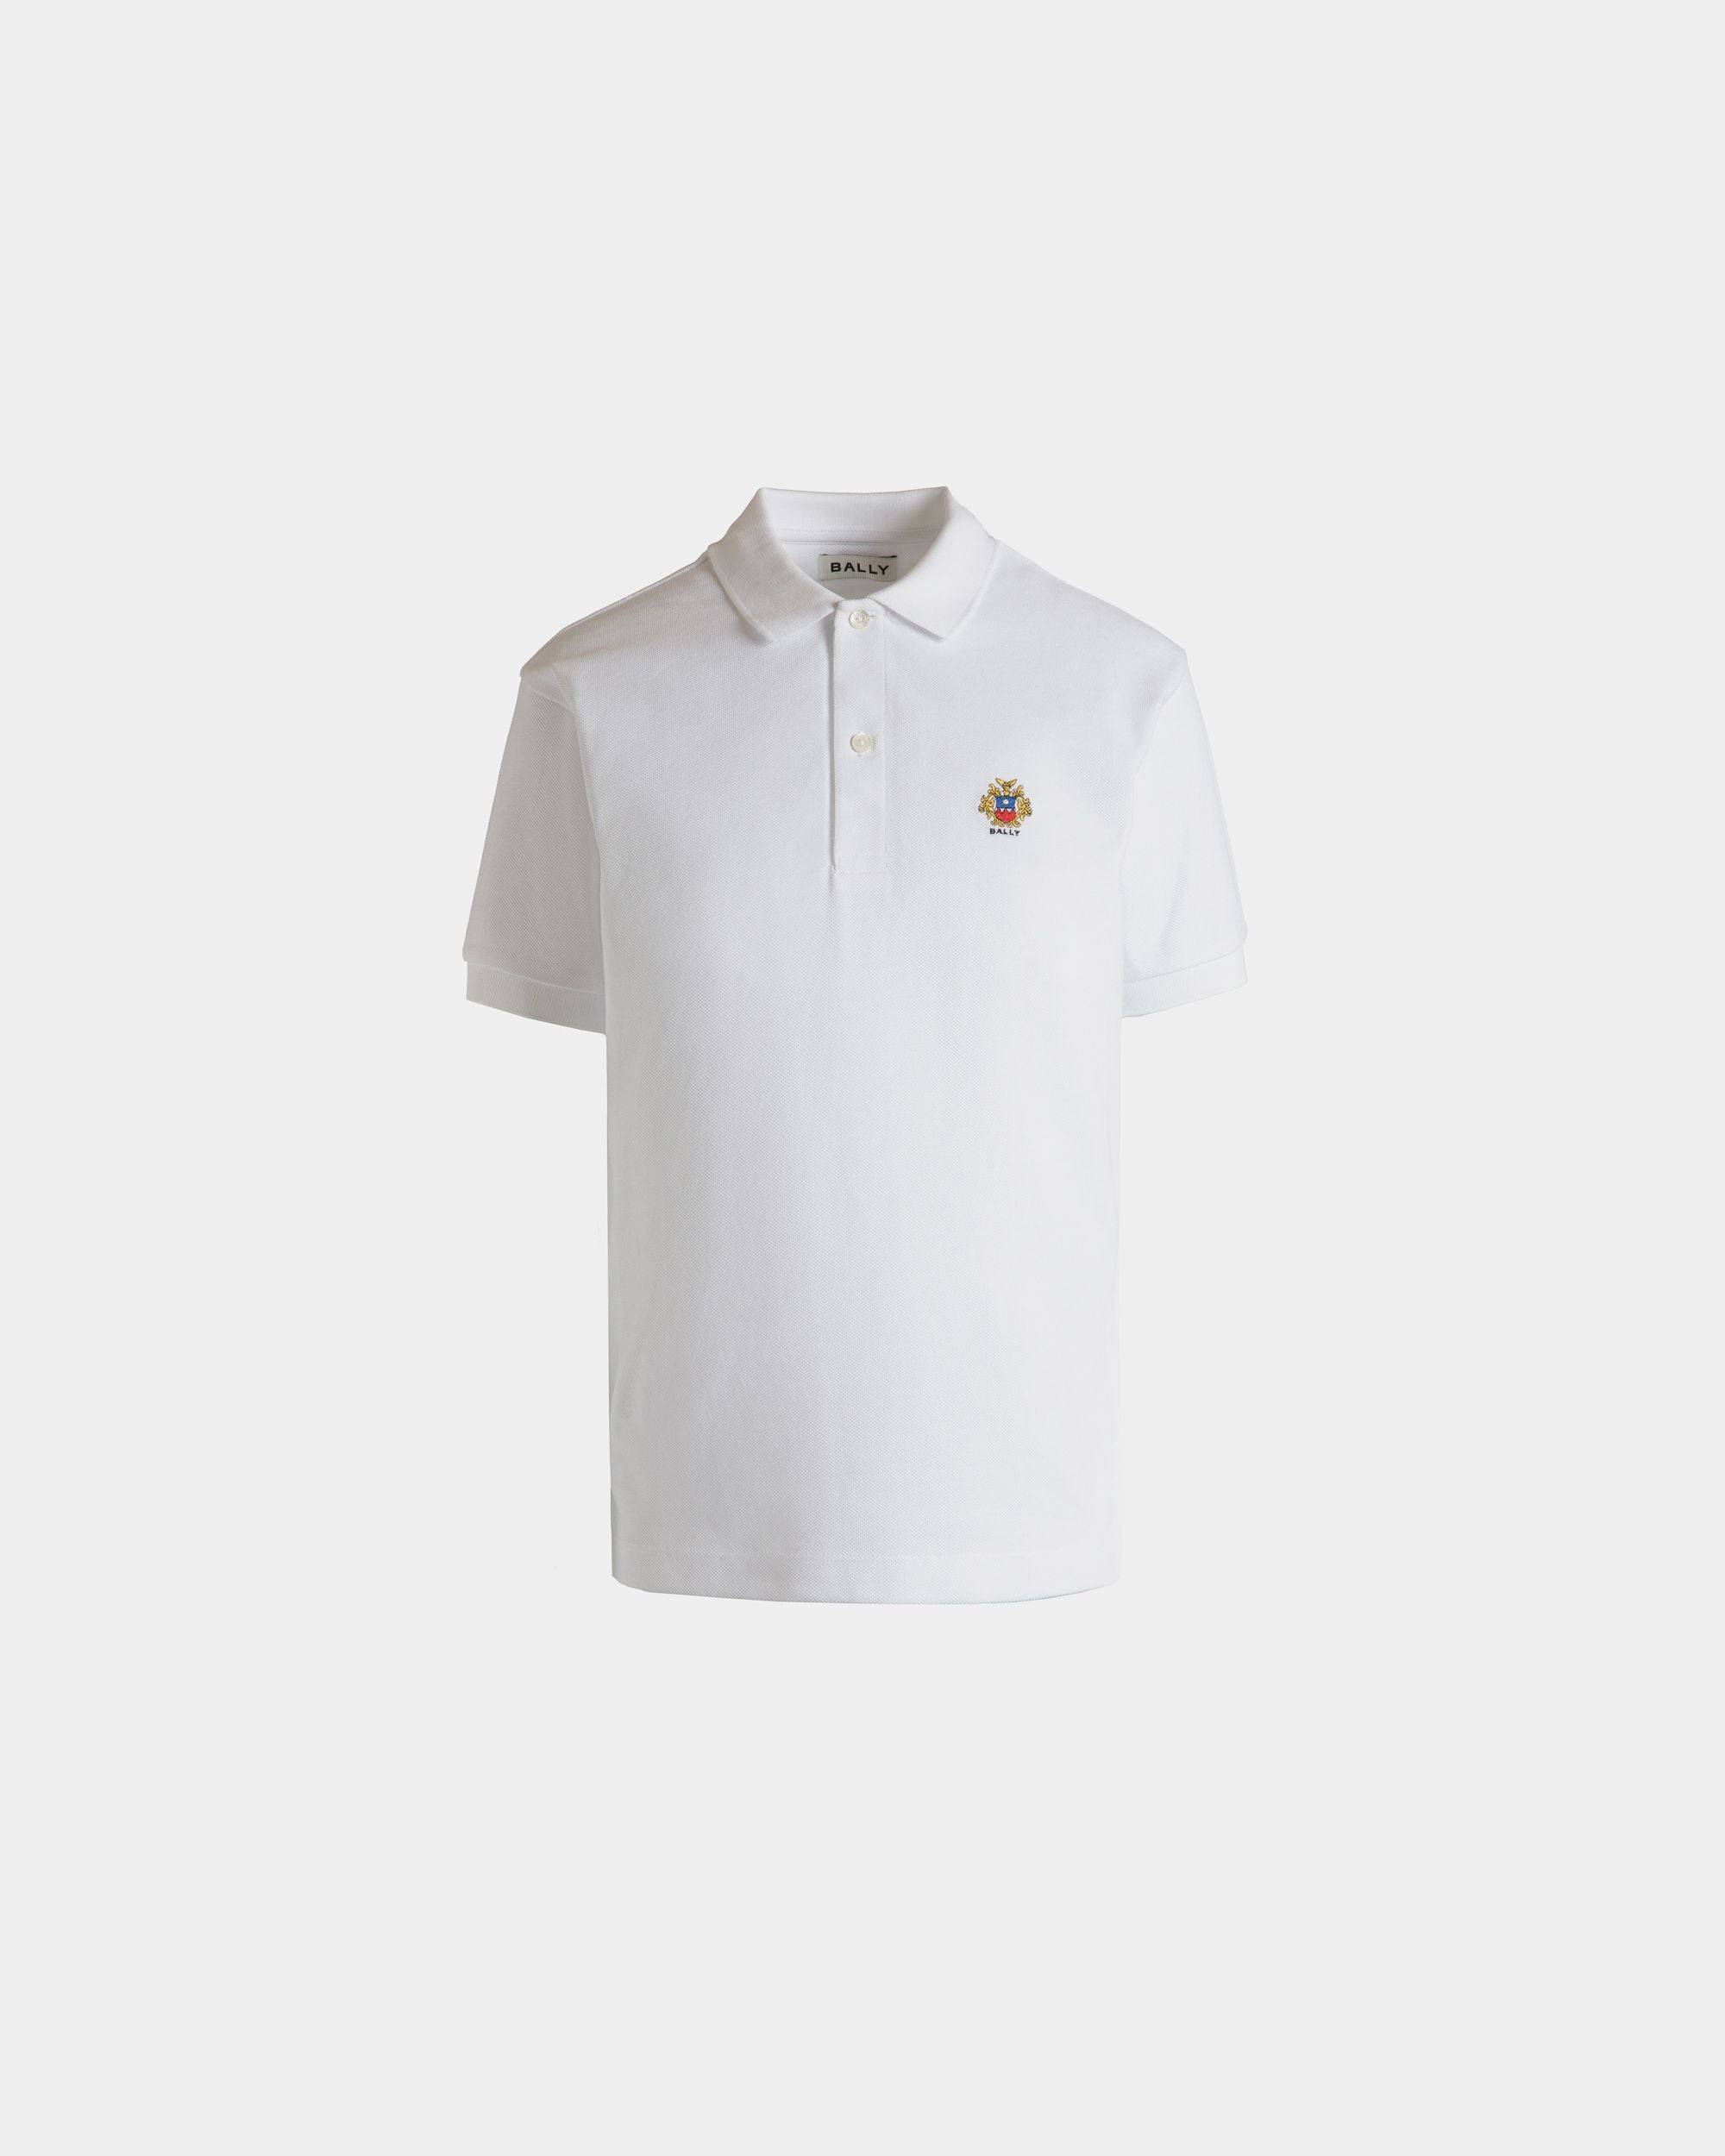 Kurzärmeliges Poloshirt Aus Baumwolle In Weiß - Damen - Bally - 01